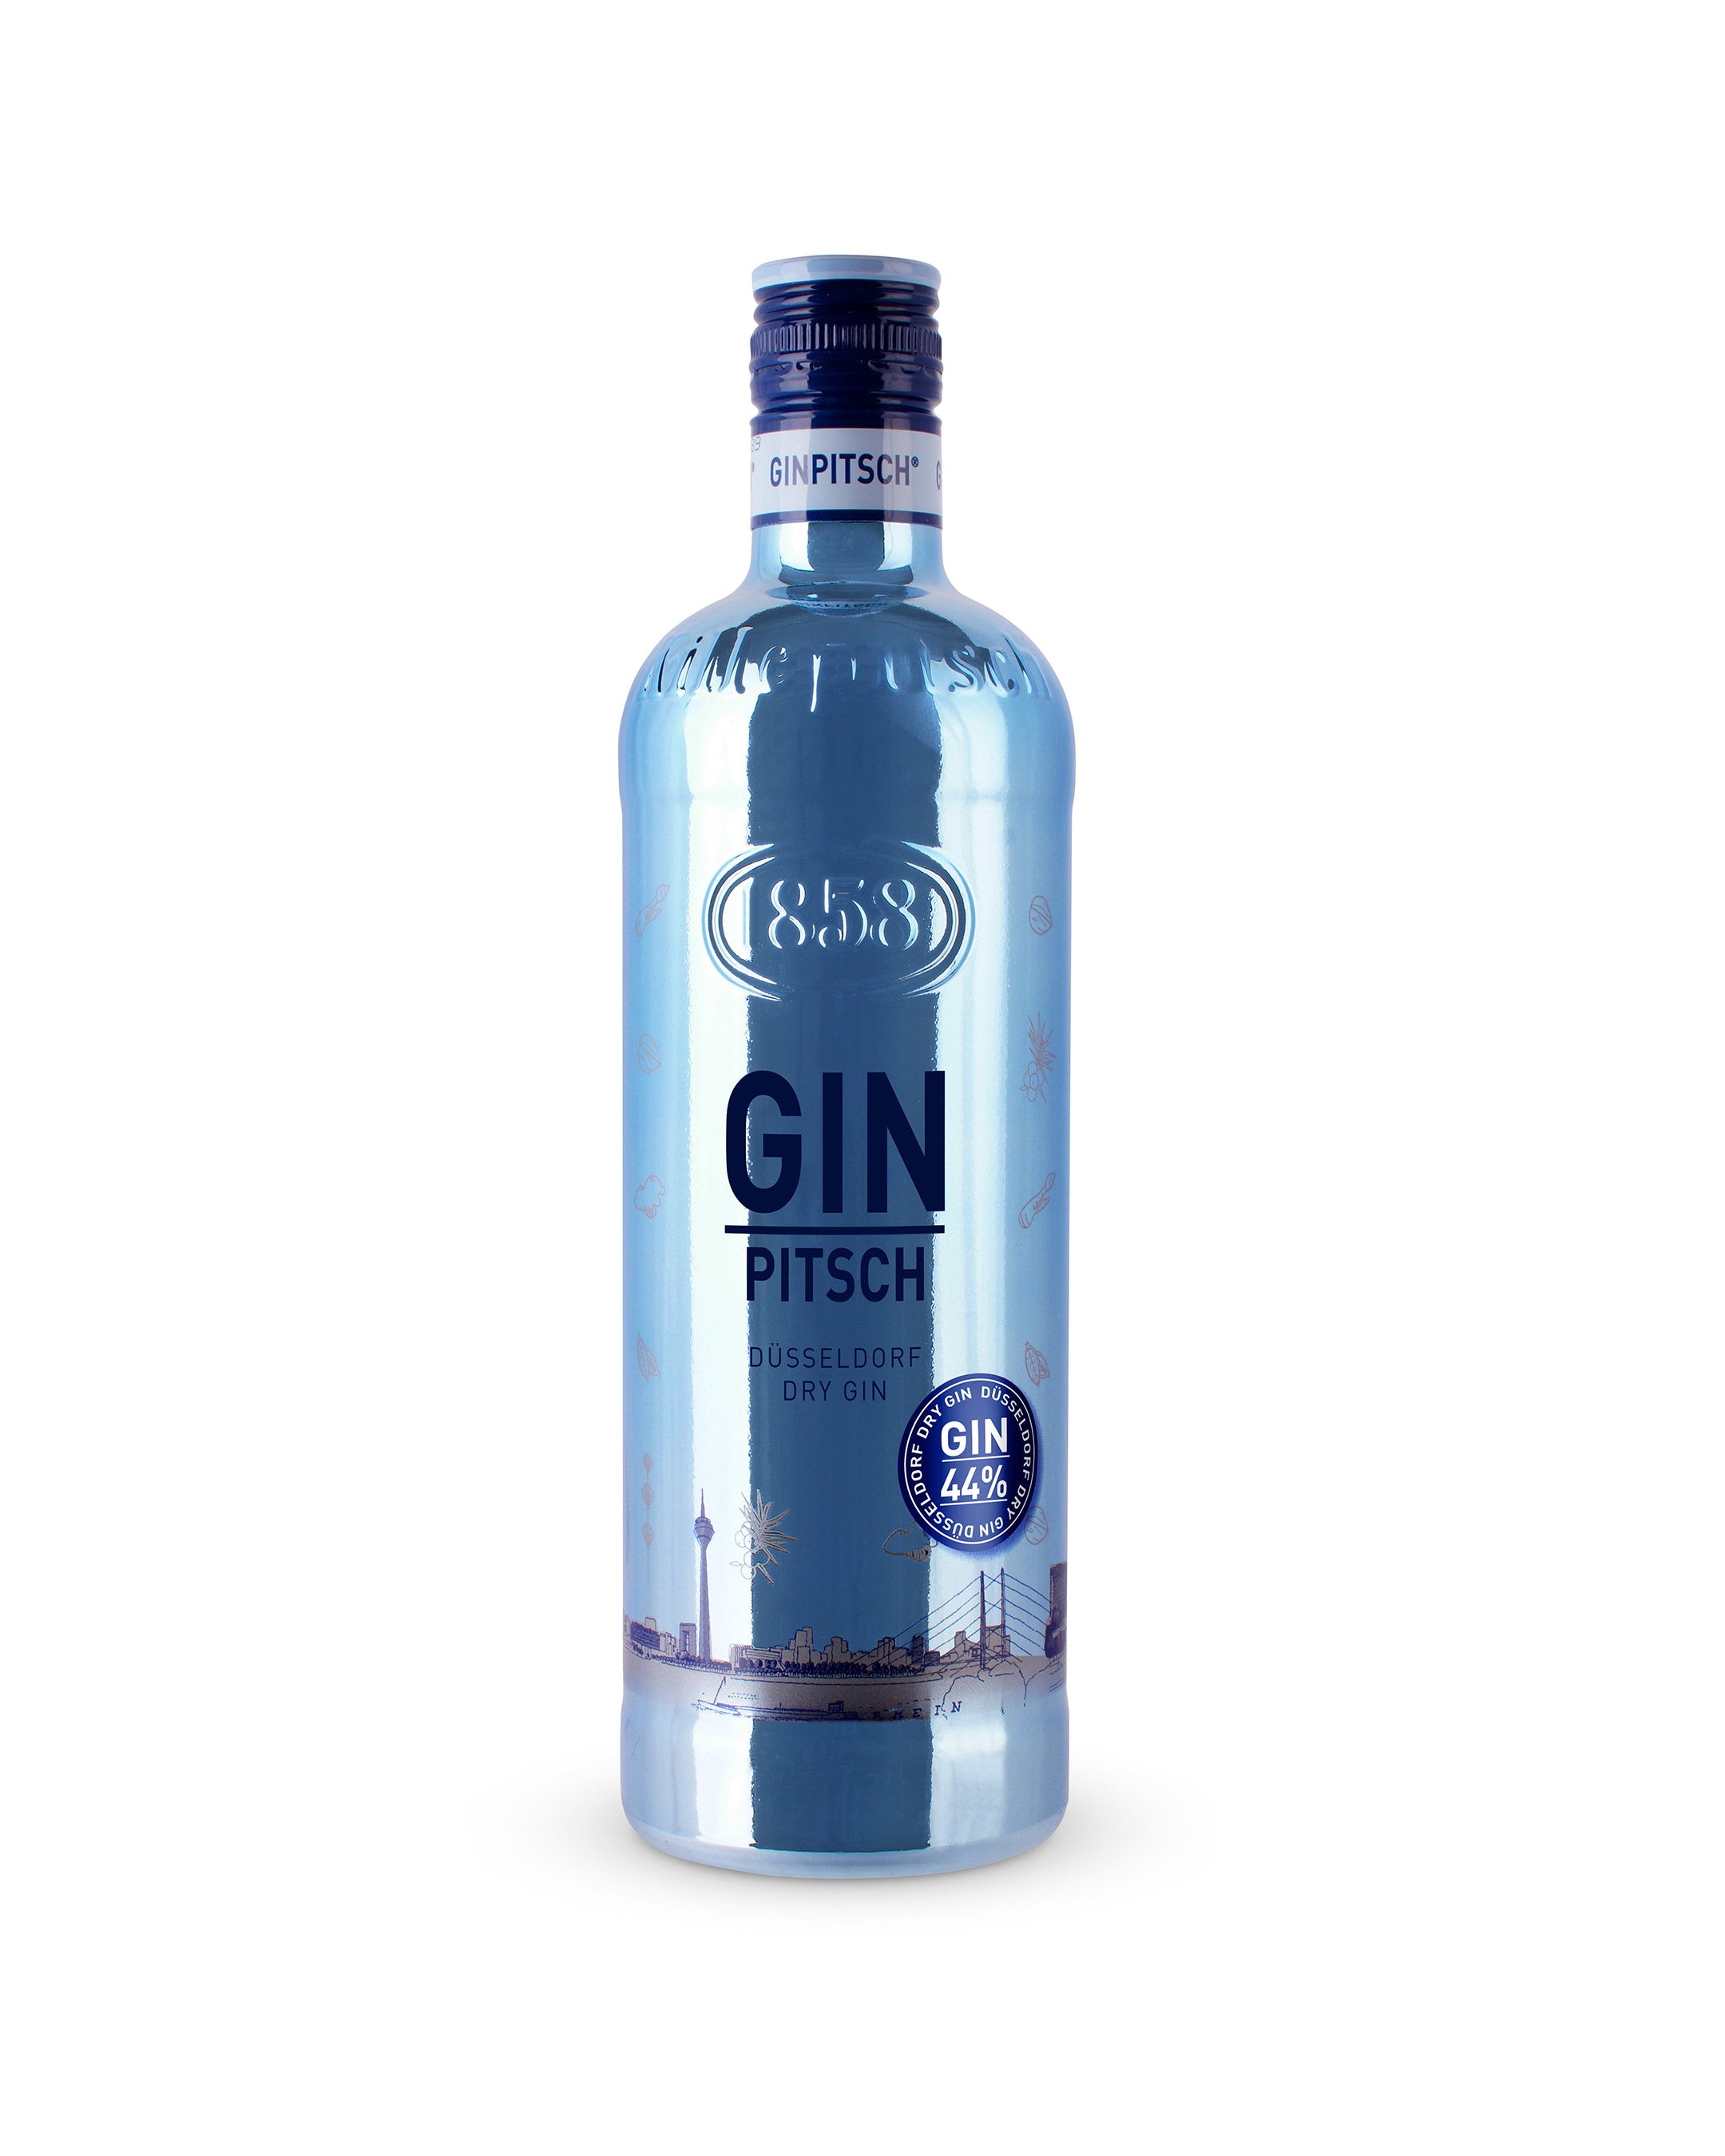 GIN Pitsch 44% - Düsseldorf Dry Gin 0,7L – Killepitsch